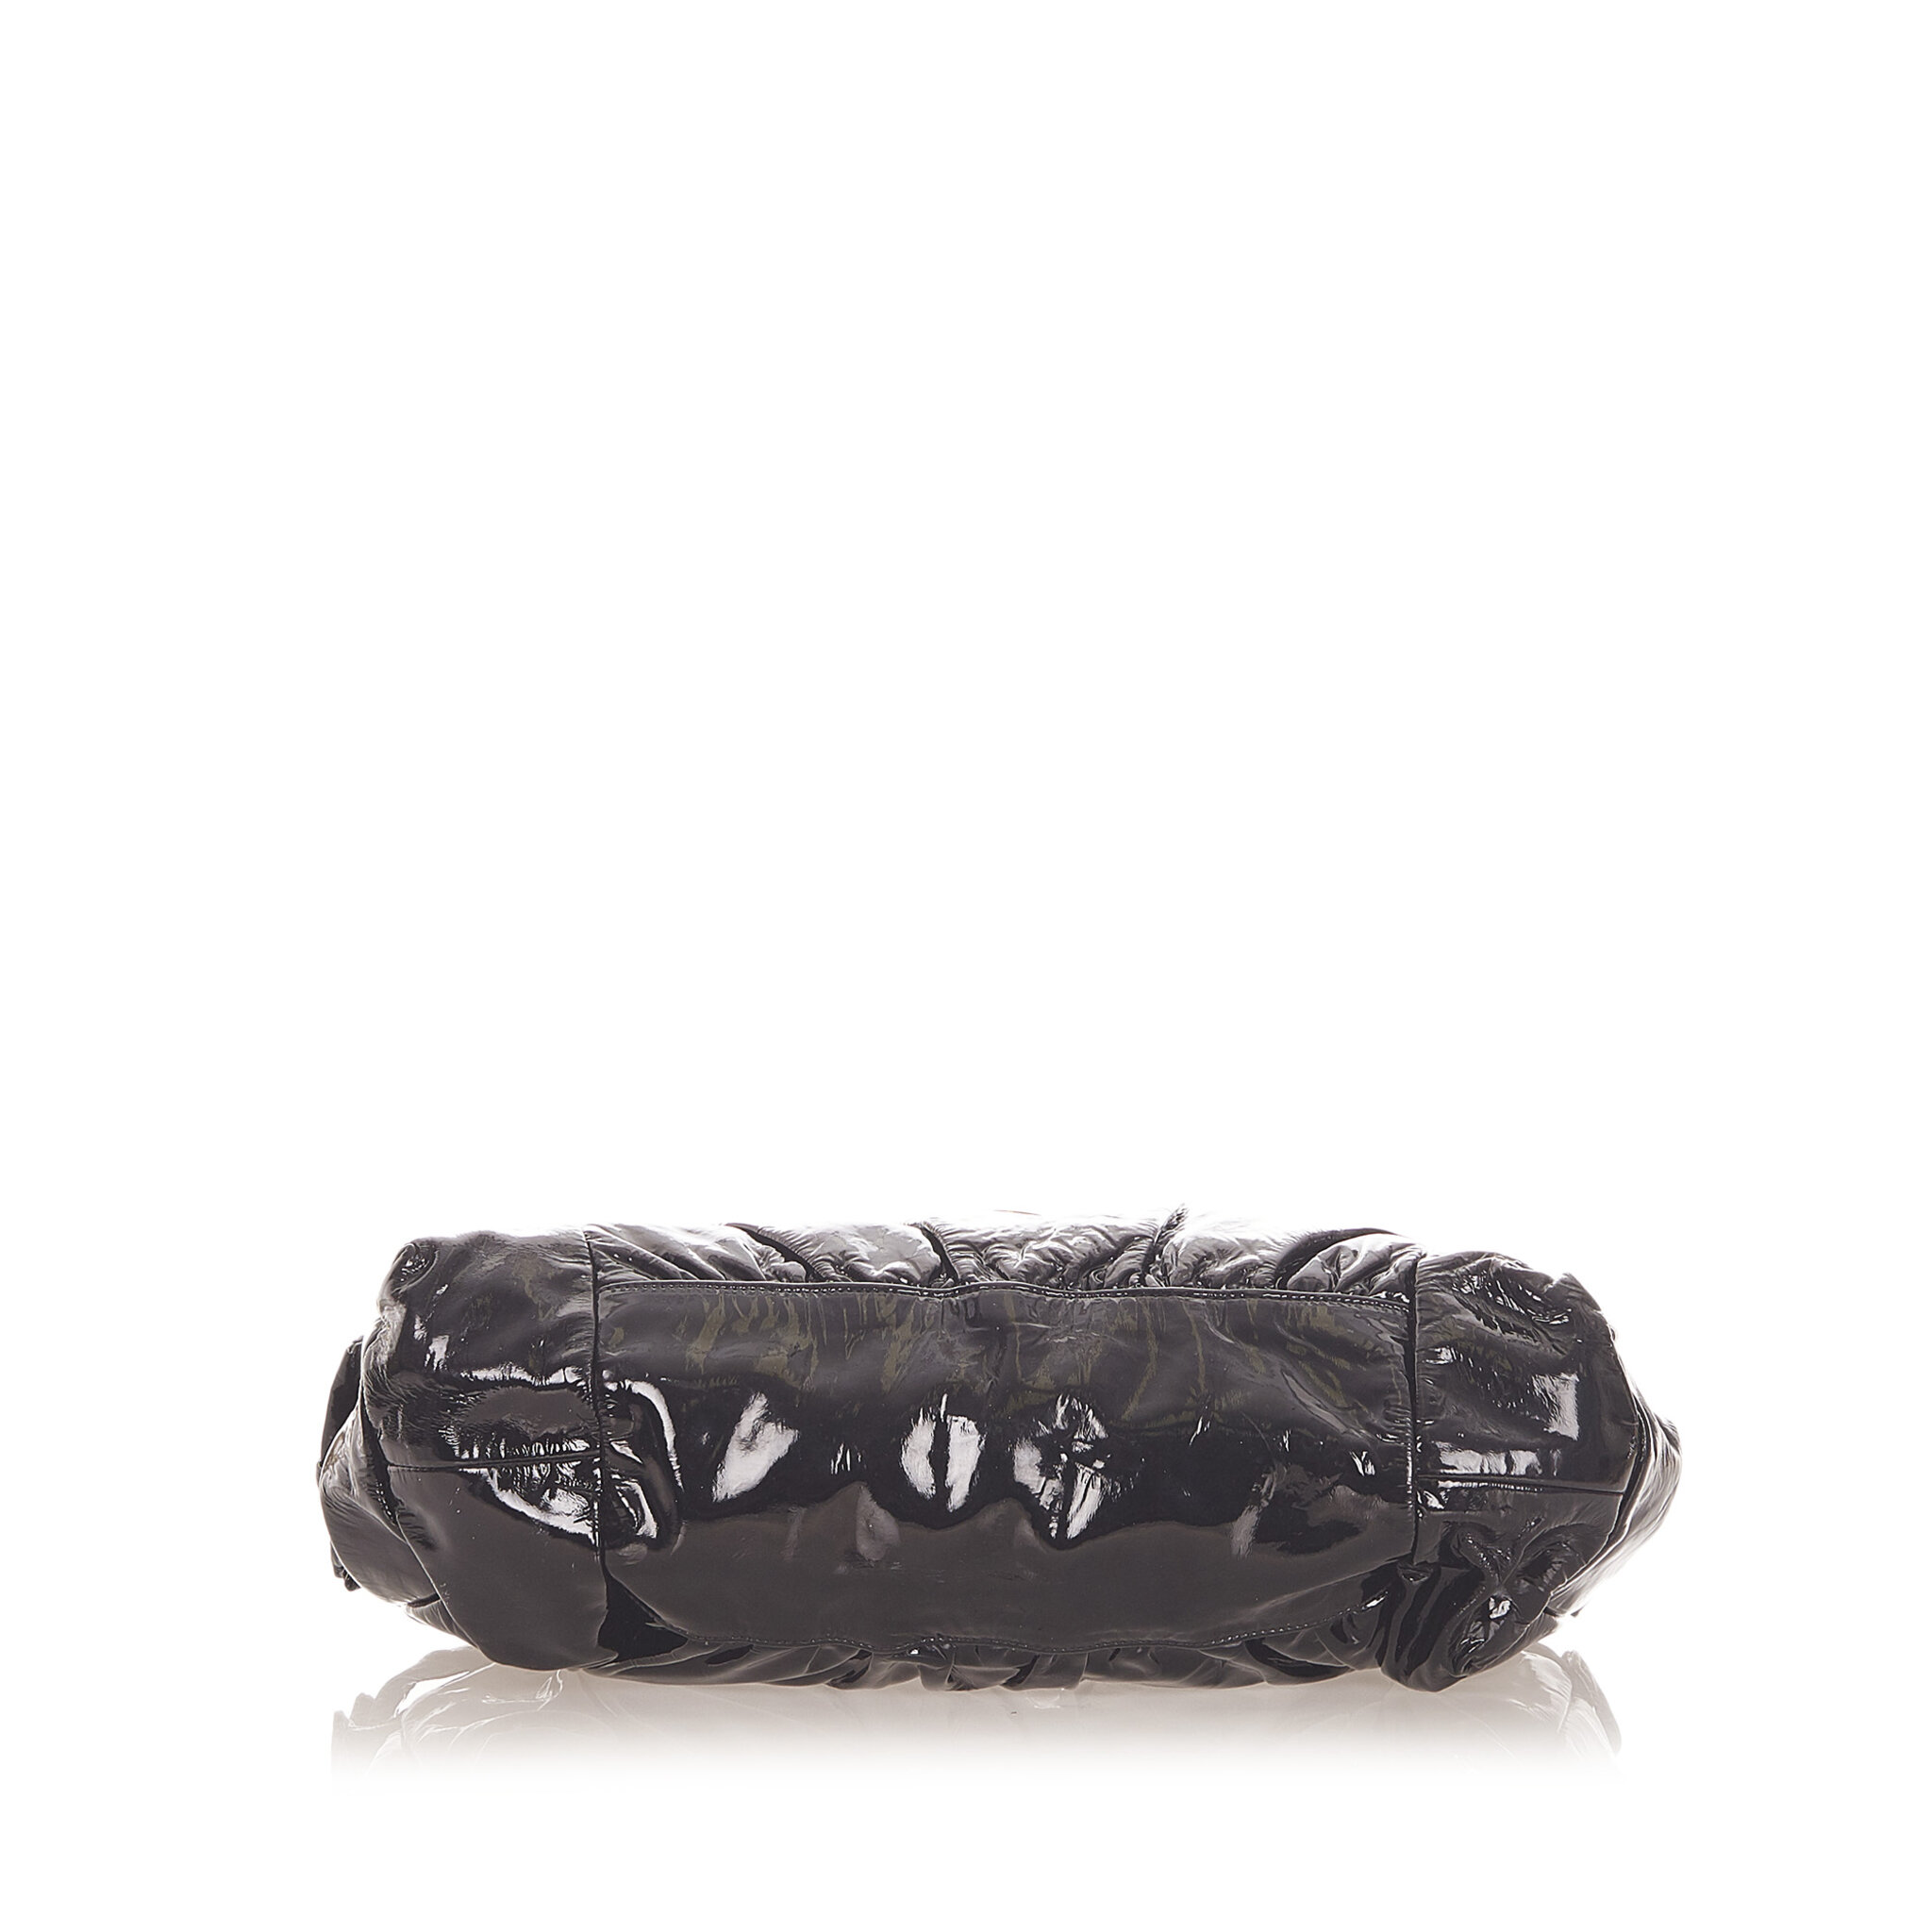 Gucci Hysteria Patent Leather Handbag, black